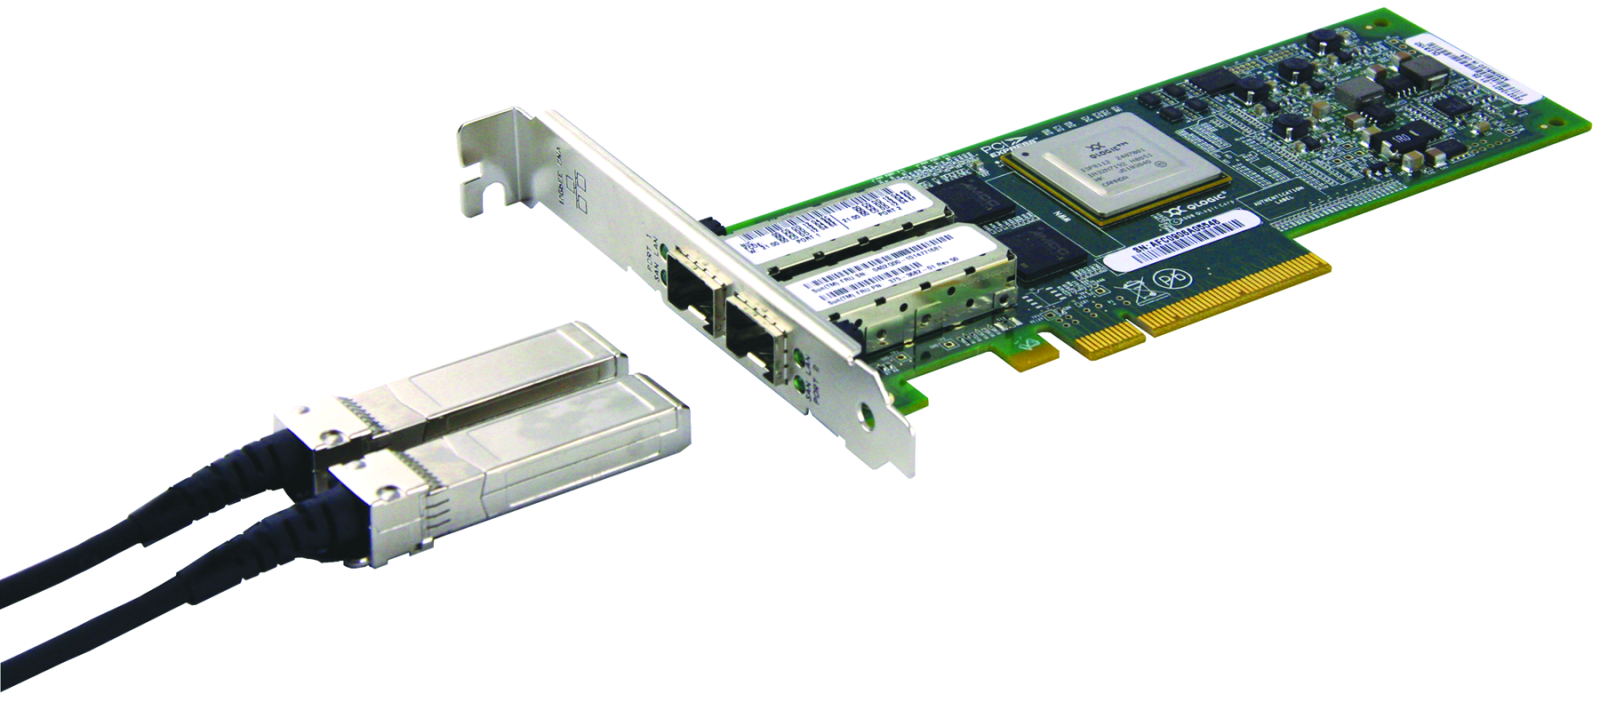 Twinax cable and PCI-E card.